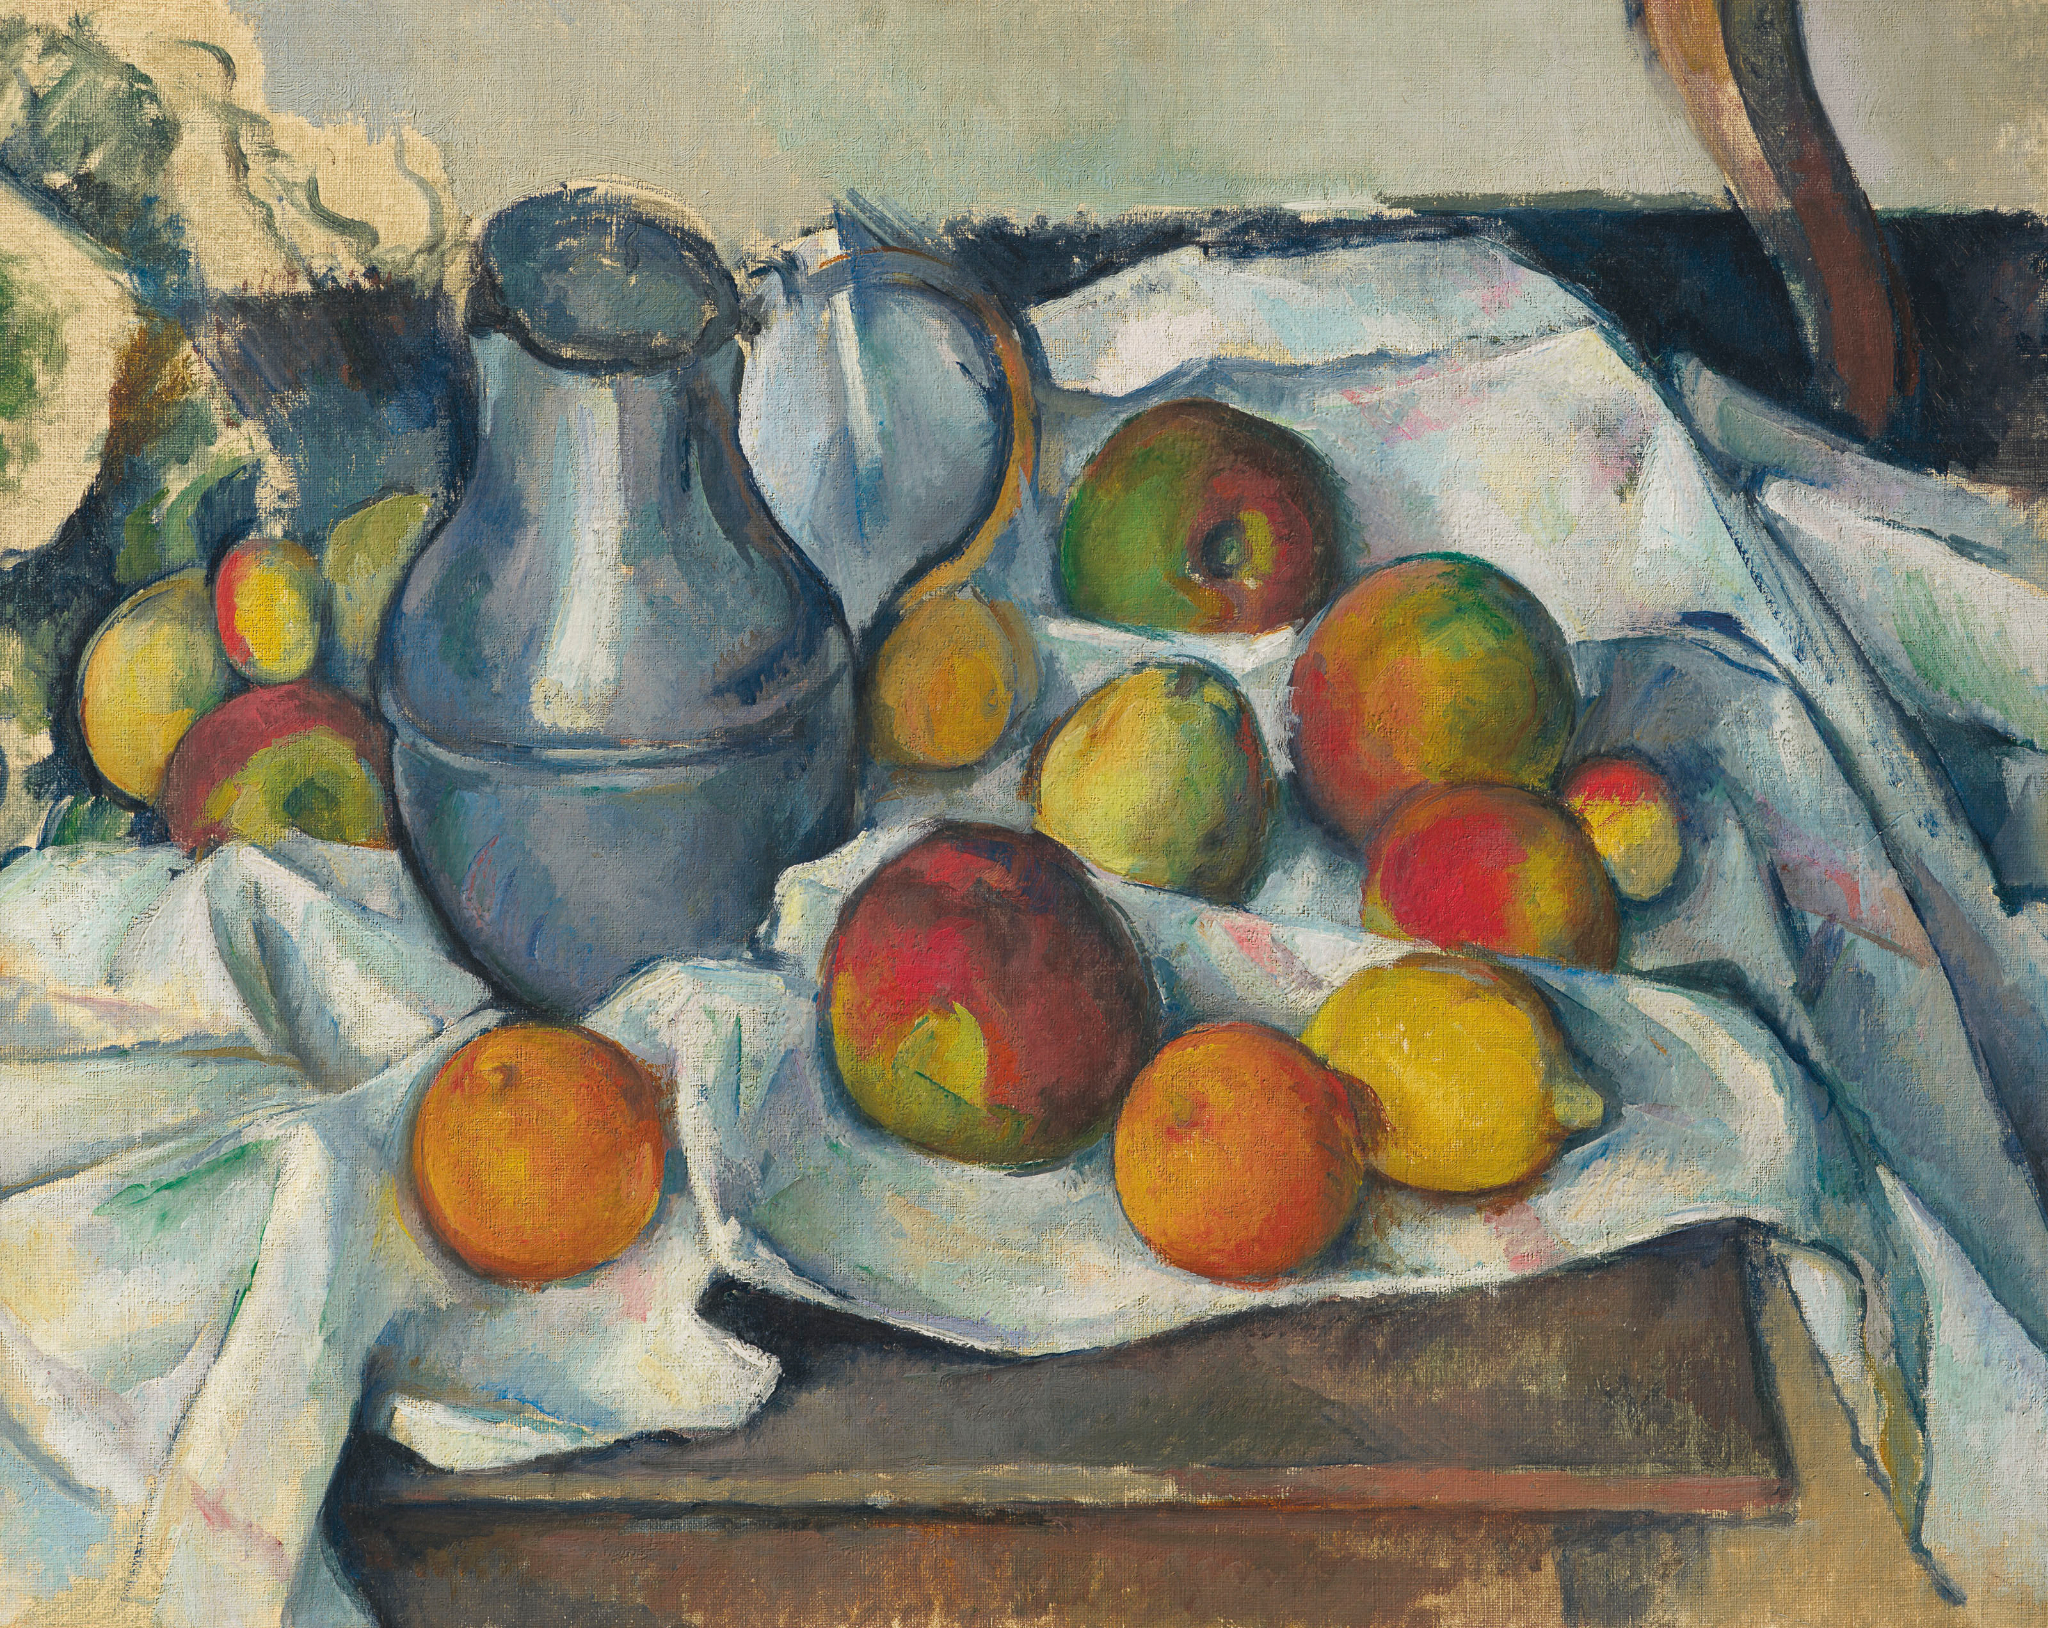 Поль Сезанн. Чайник та фрукти, 1888-1890